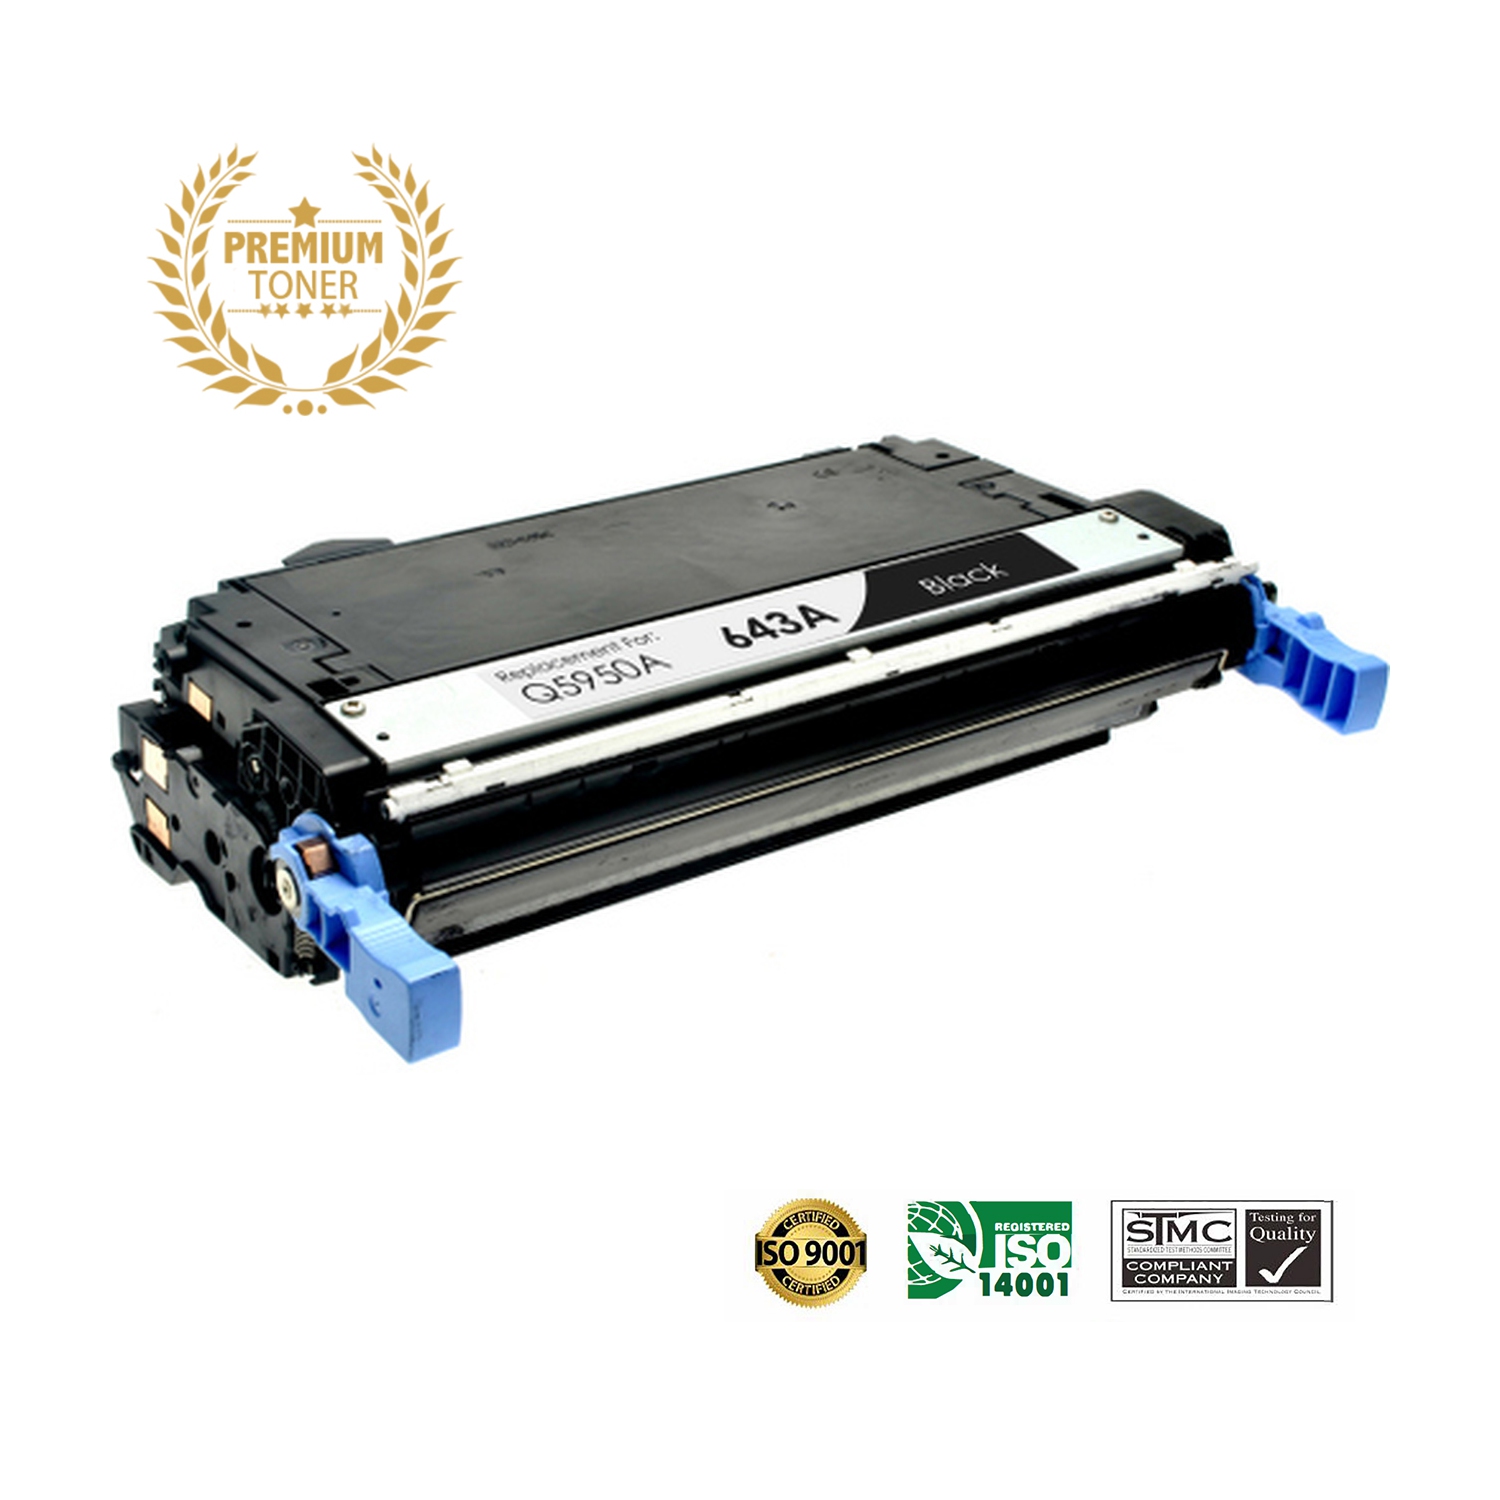 Ultra Toner™ Superior HP 643A (Q5950A) Black Toner Cartridge Premium Quality！